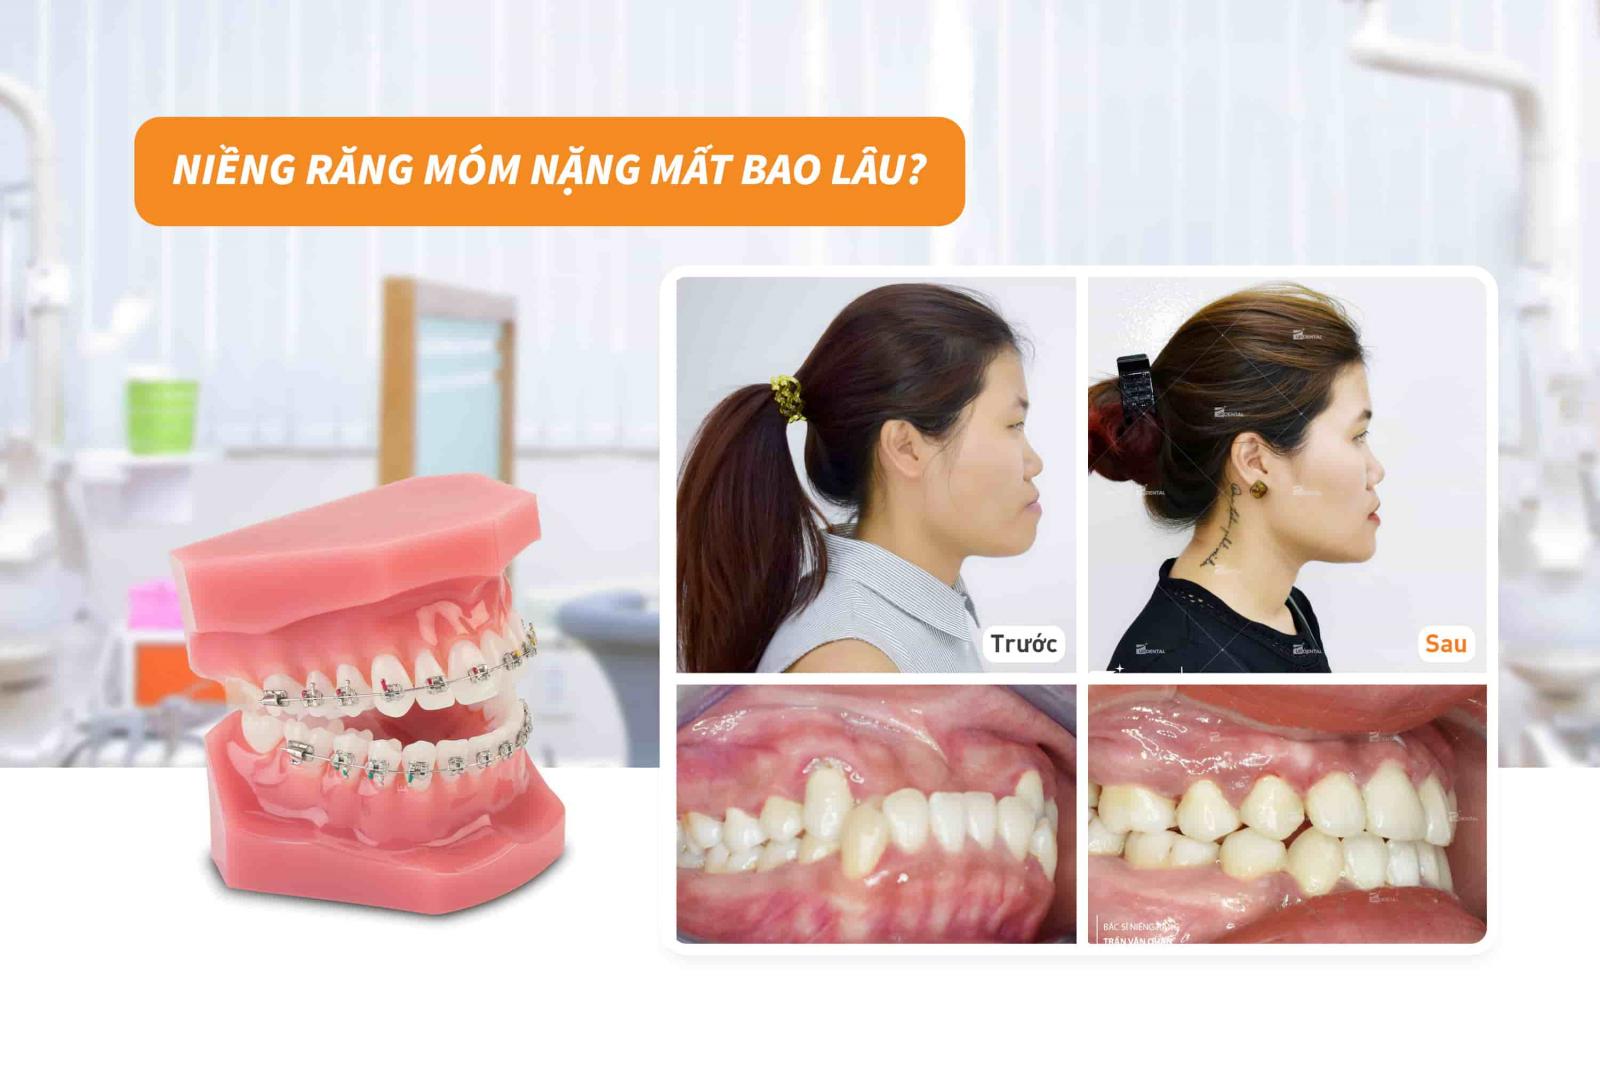 Niềng răng móm nặng mất bao lâu?